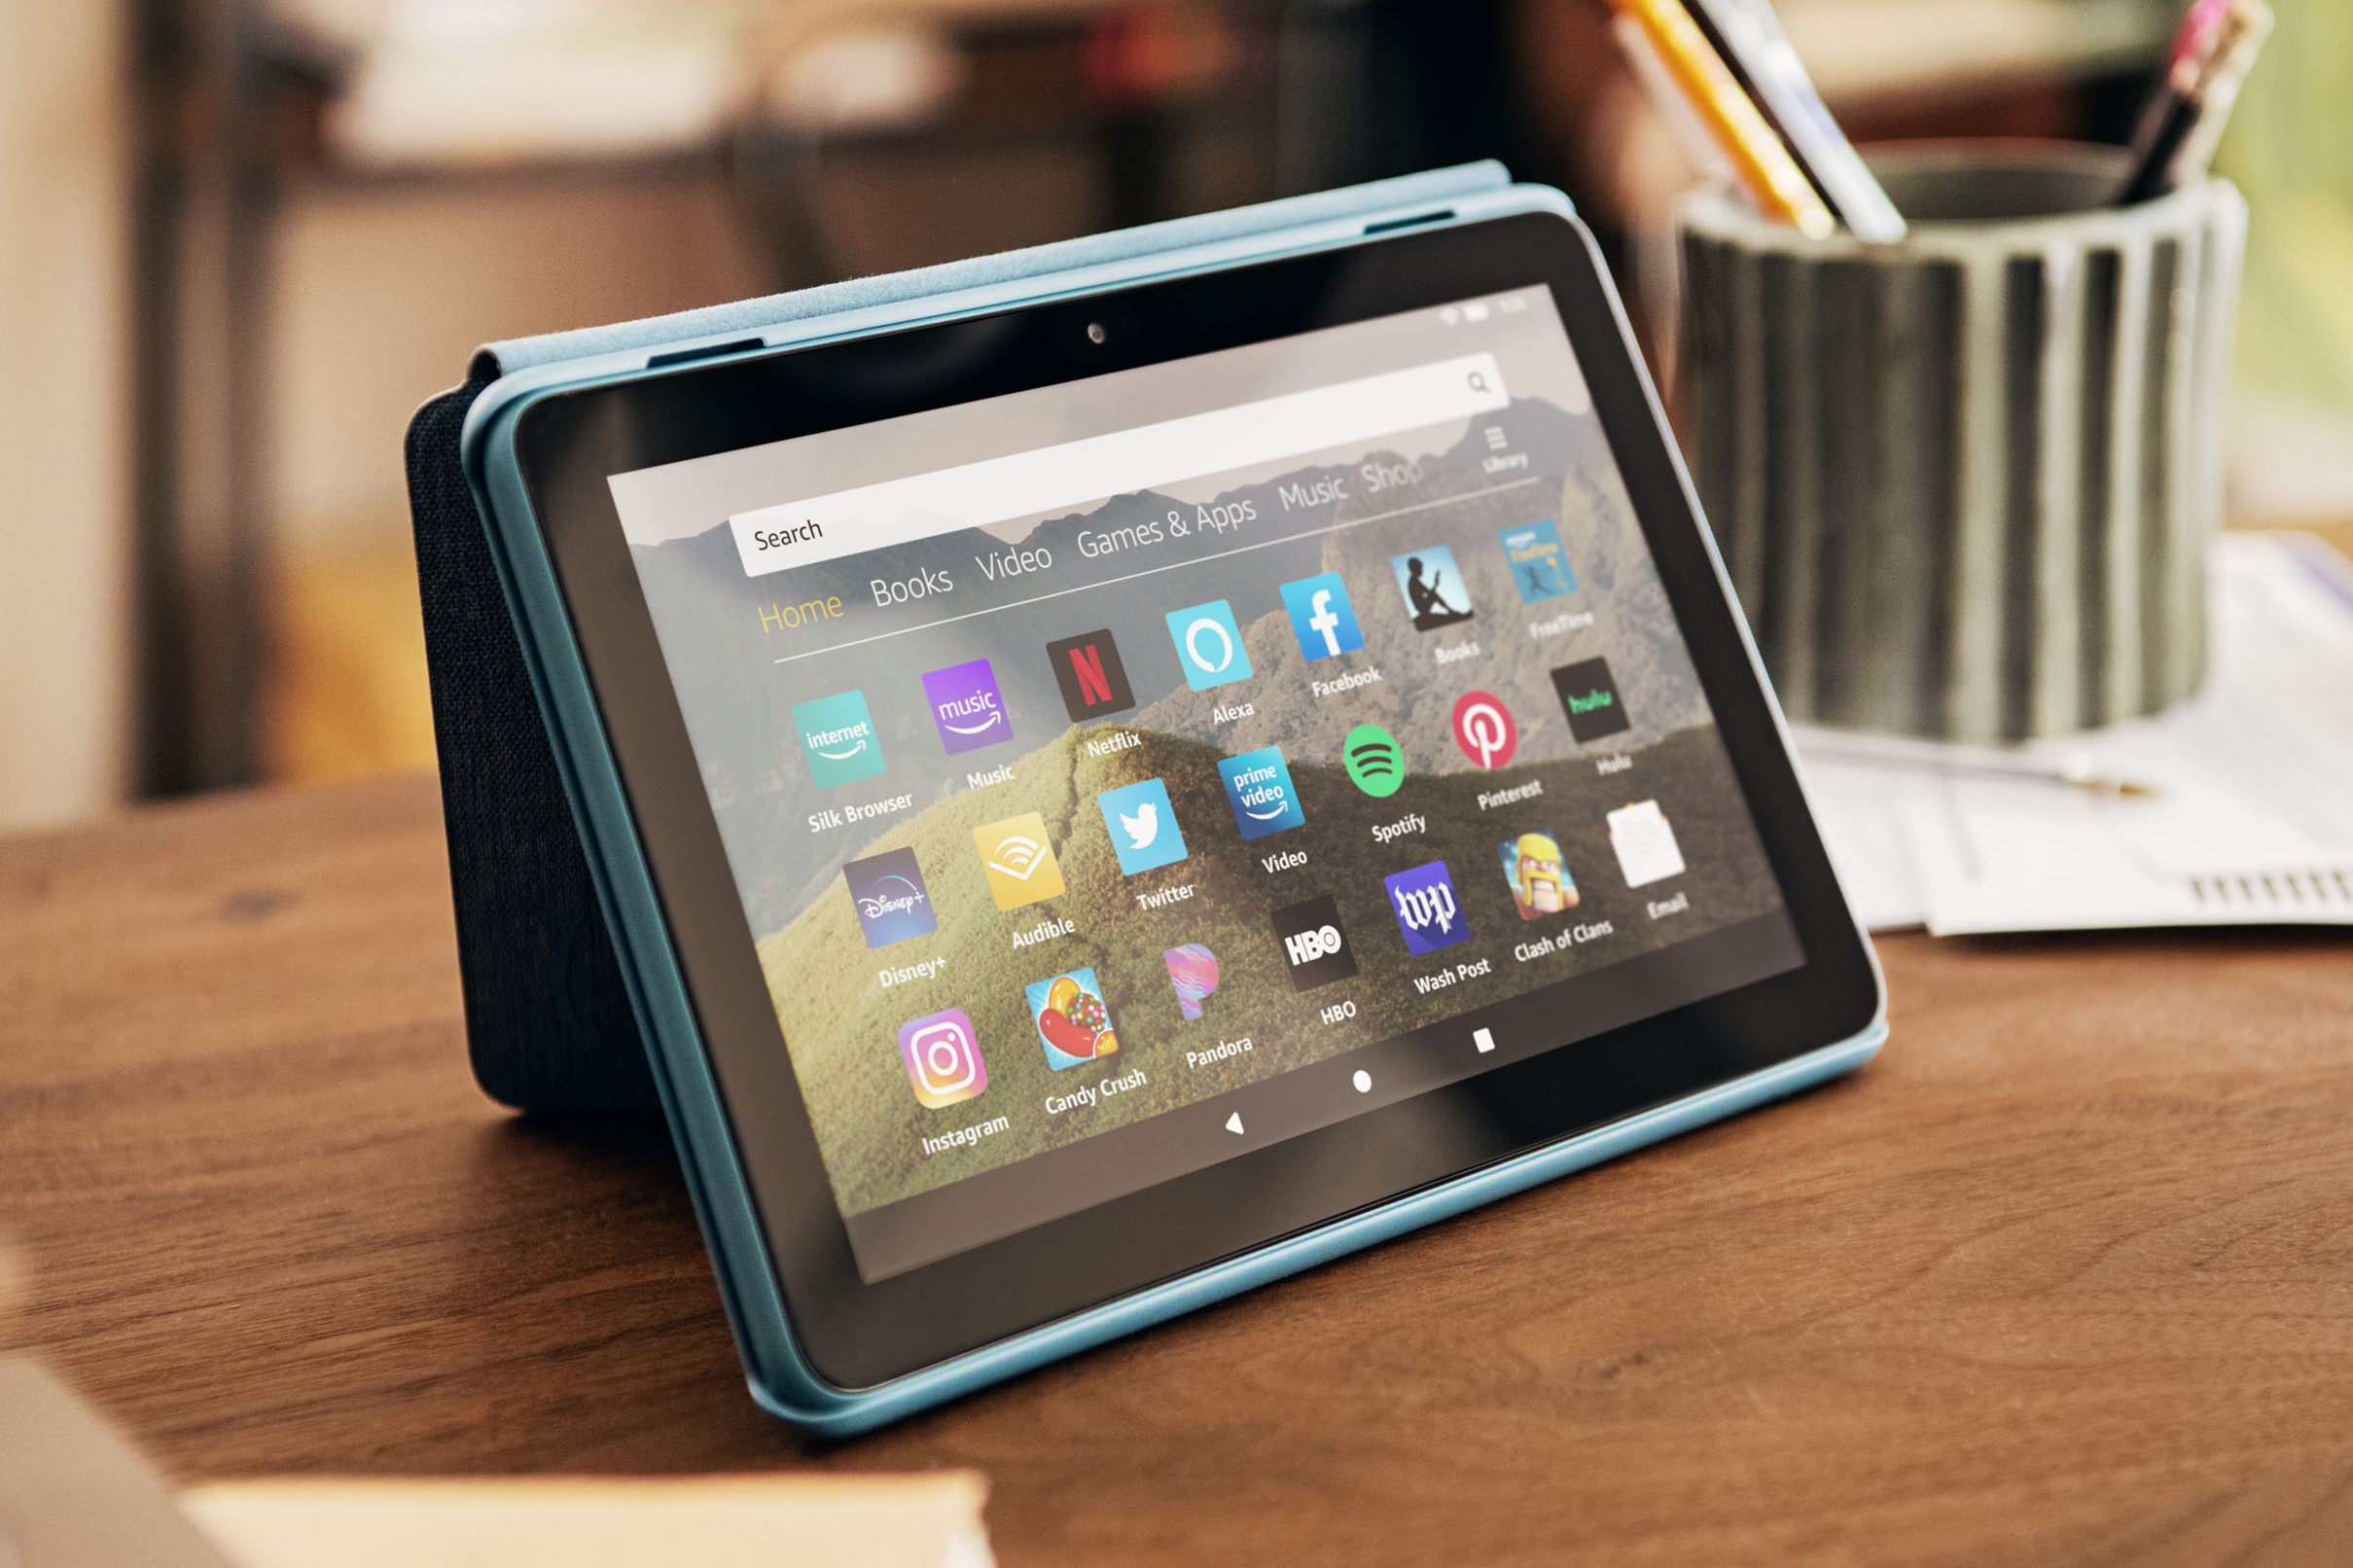 Fire HD 8 review: The best ultracheap tablet - CNET